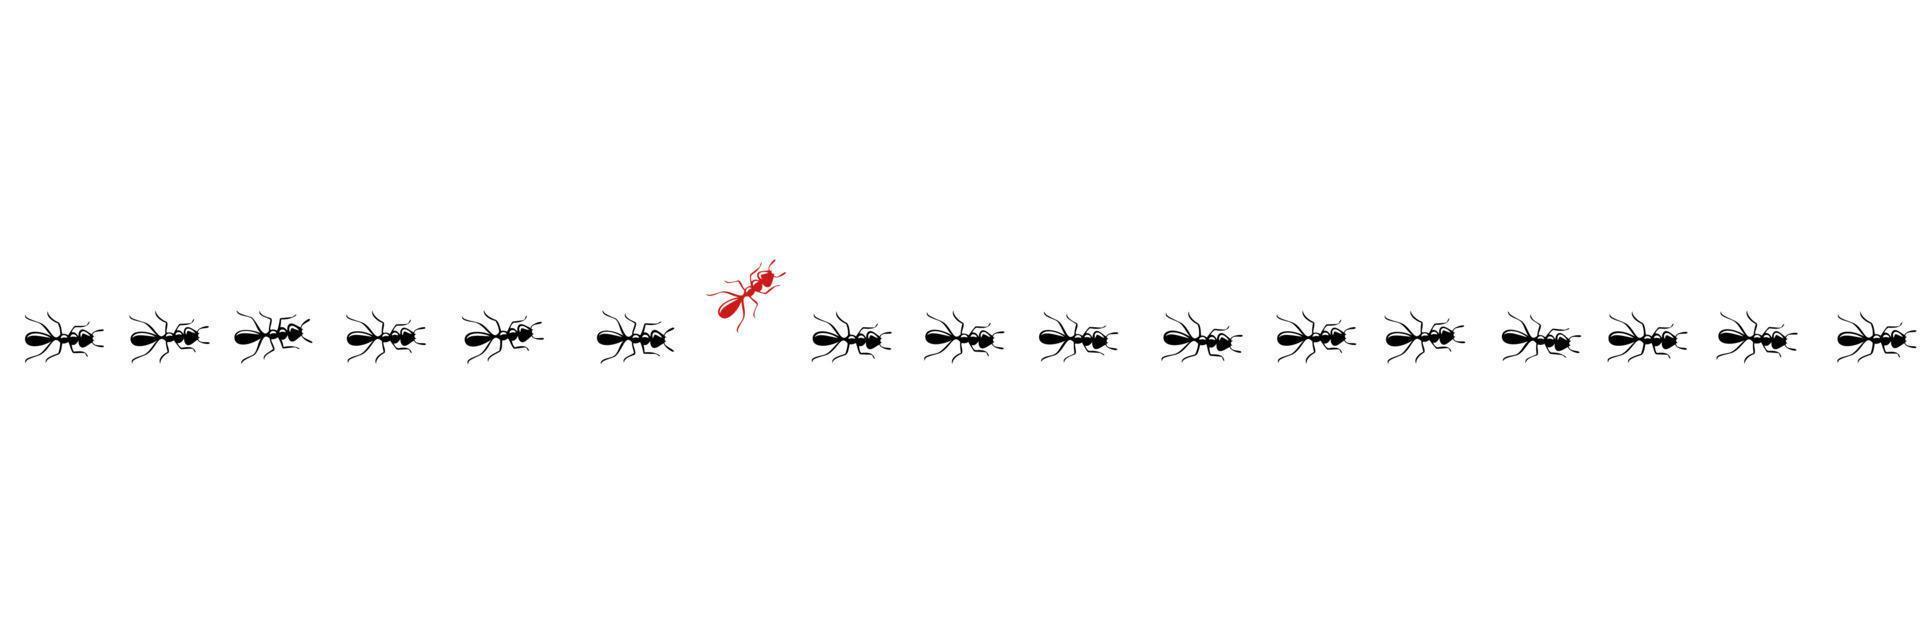 trilha de formigas com um trocador. pense diferente e seja um conceito único. ilustração vetorial vetor